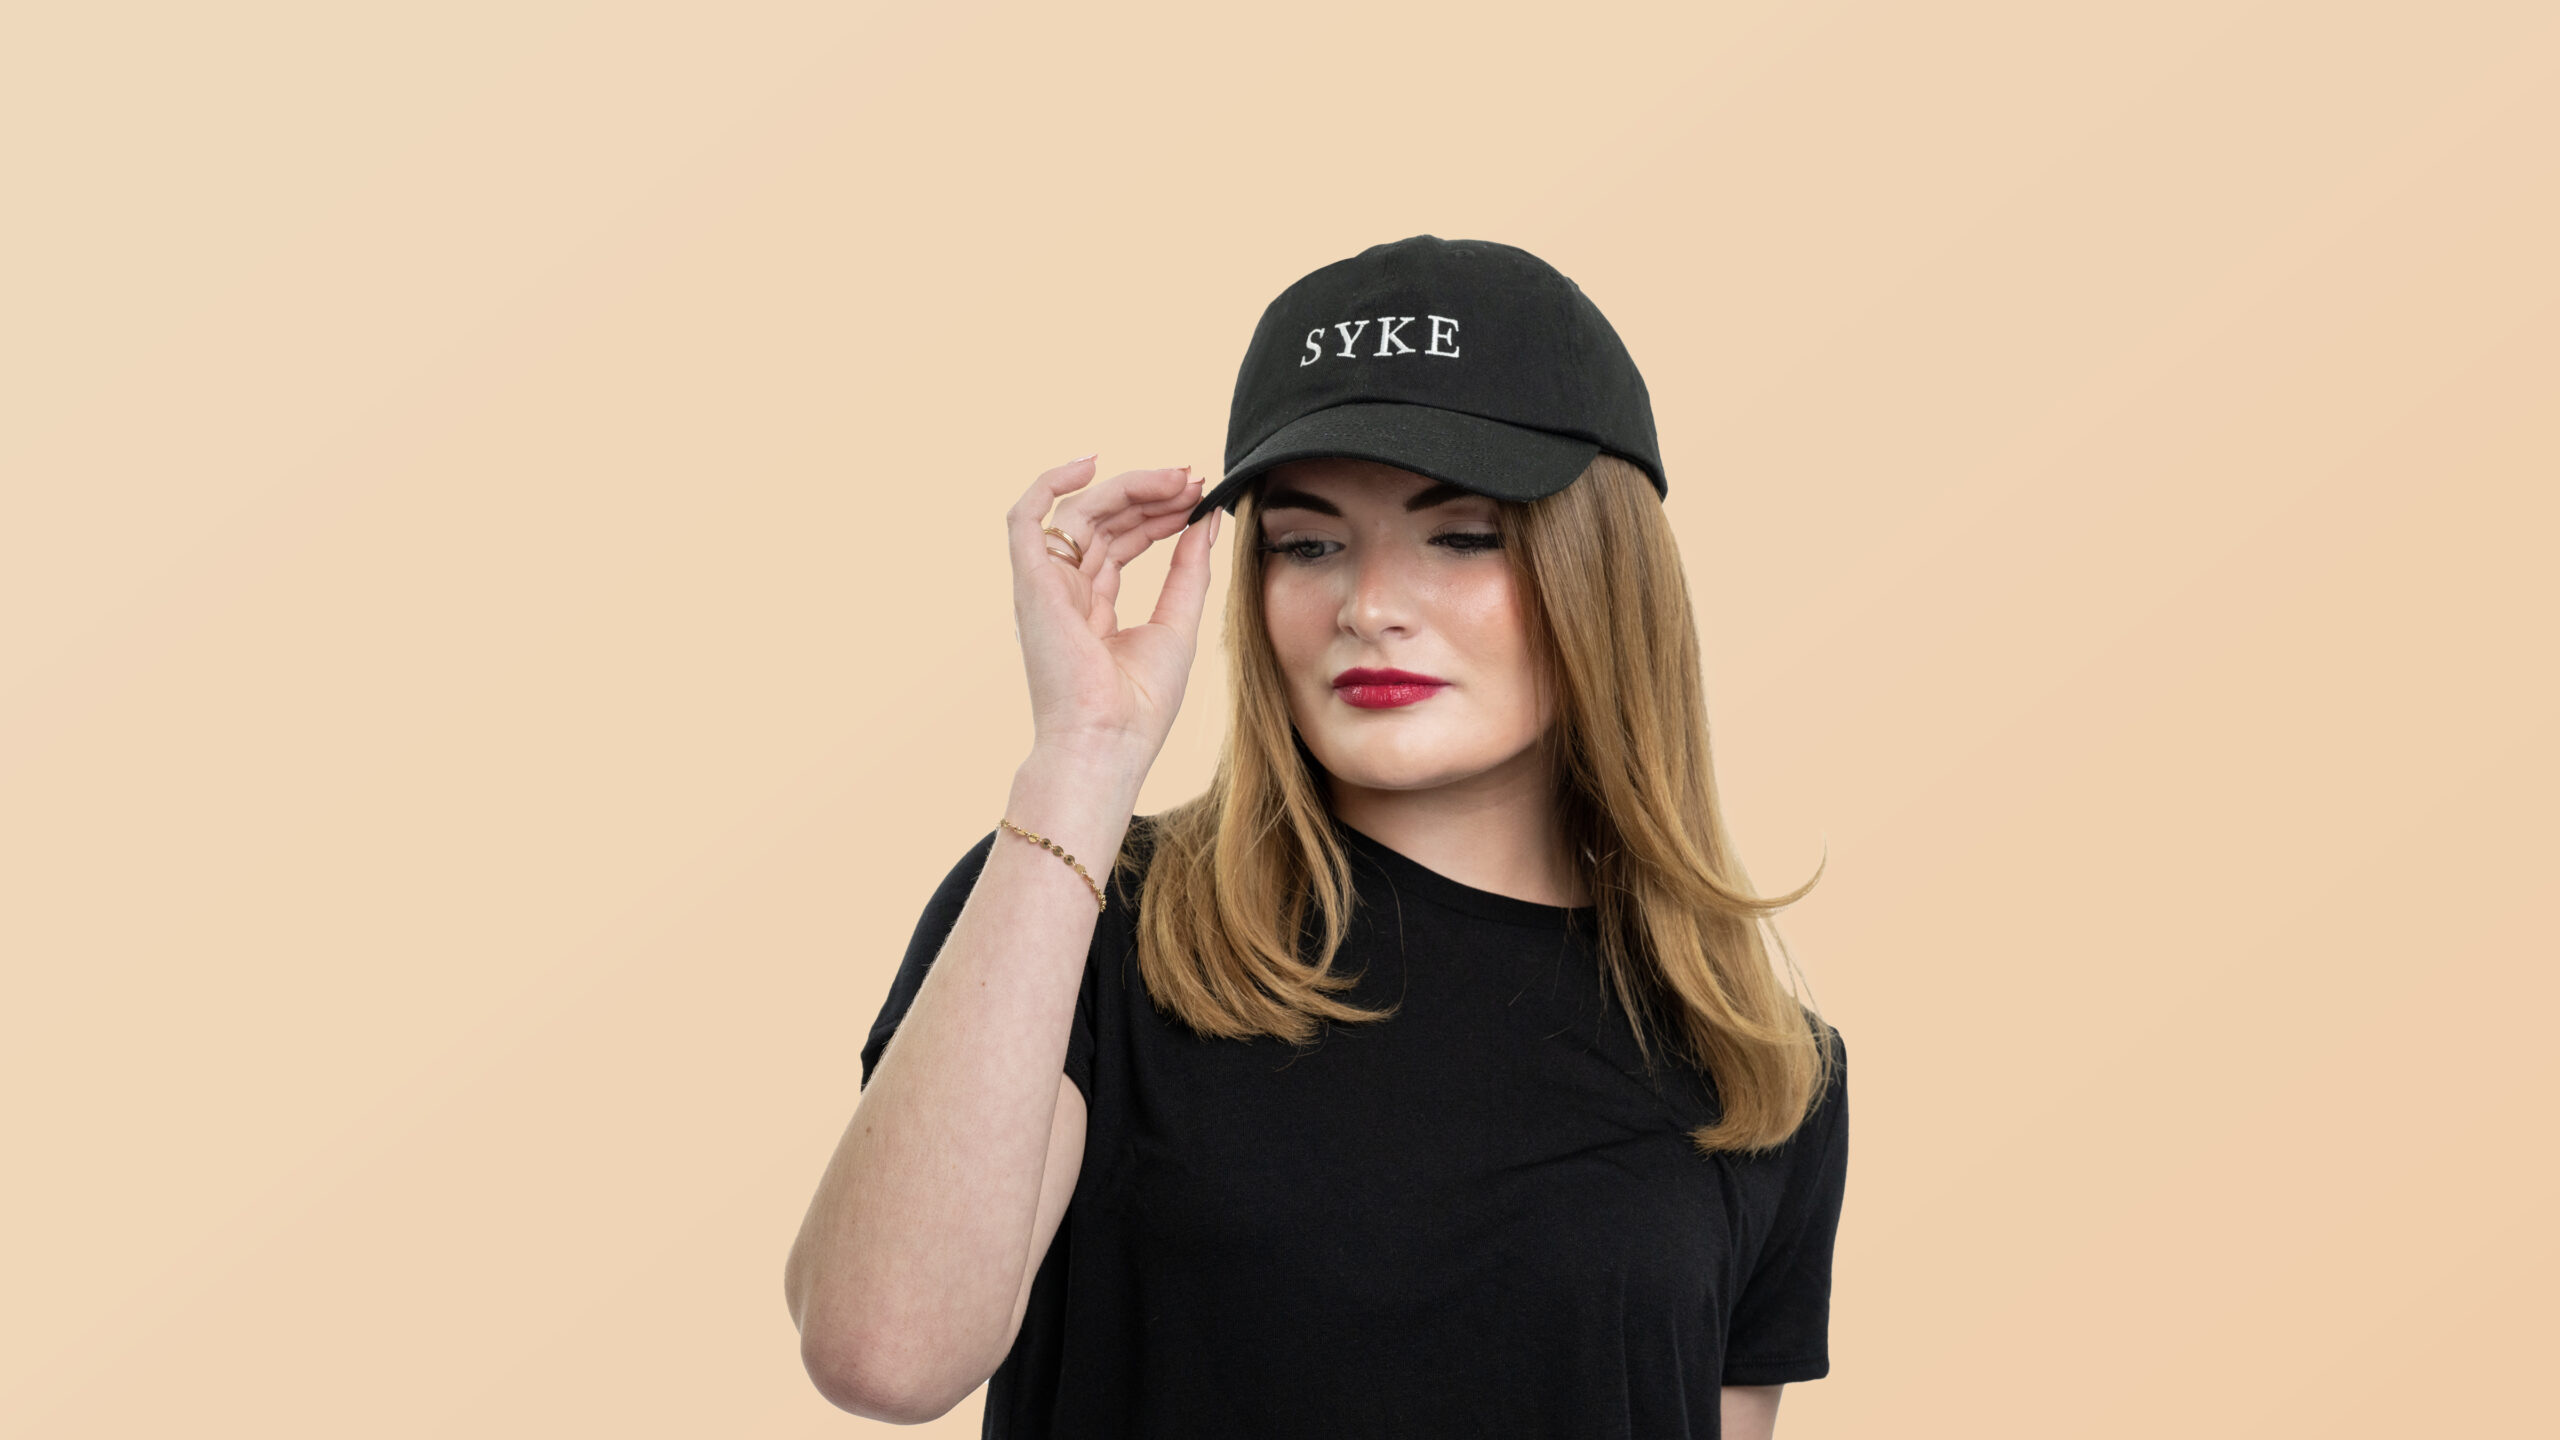 SYKE BLACK HATS FOR WOMEN